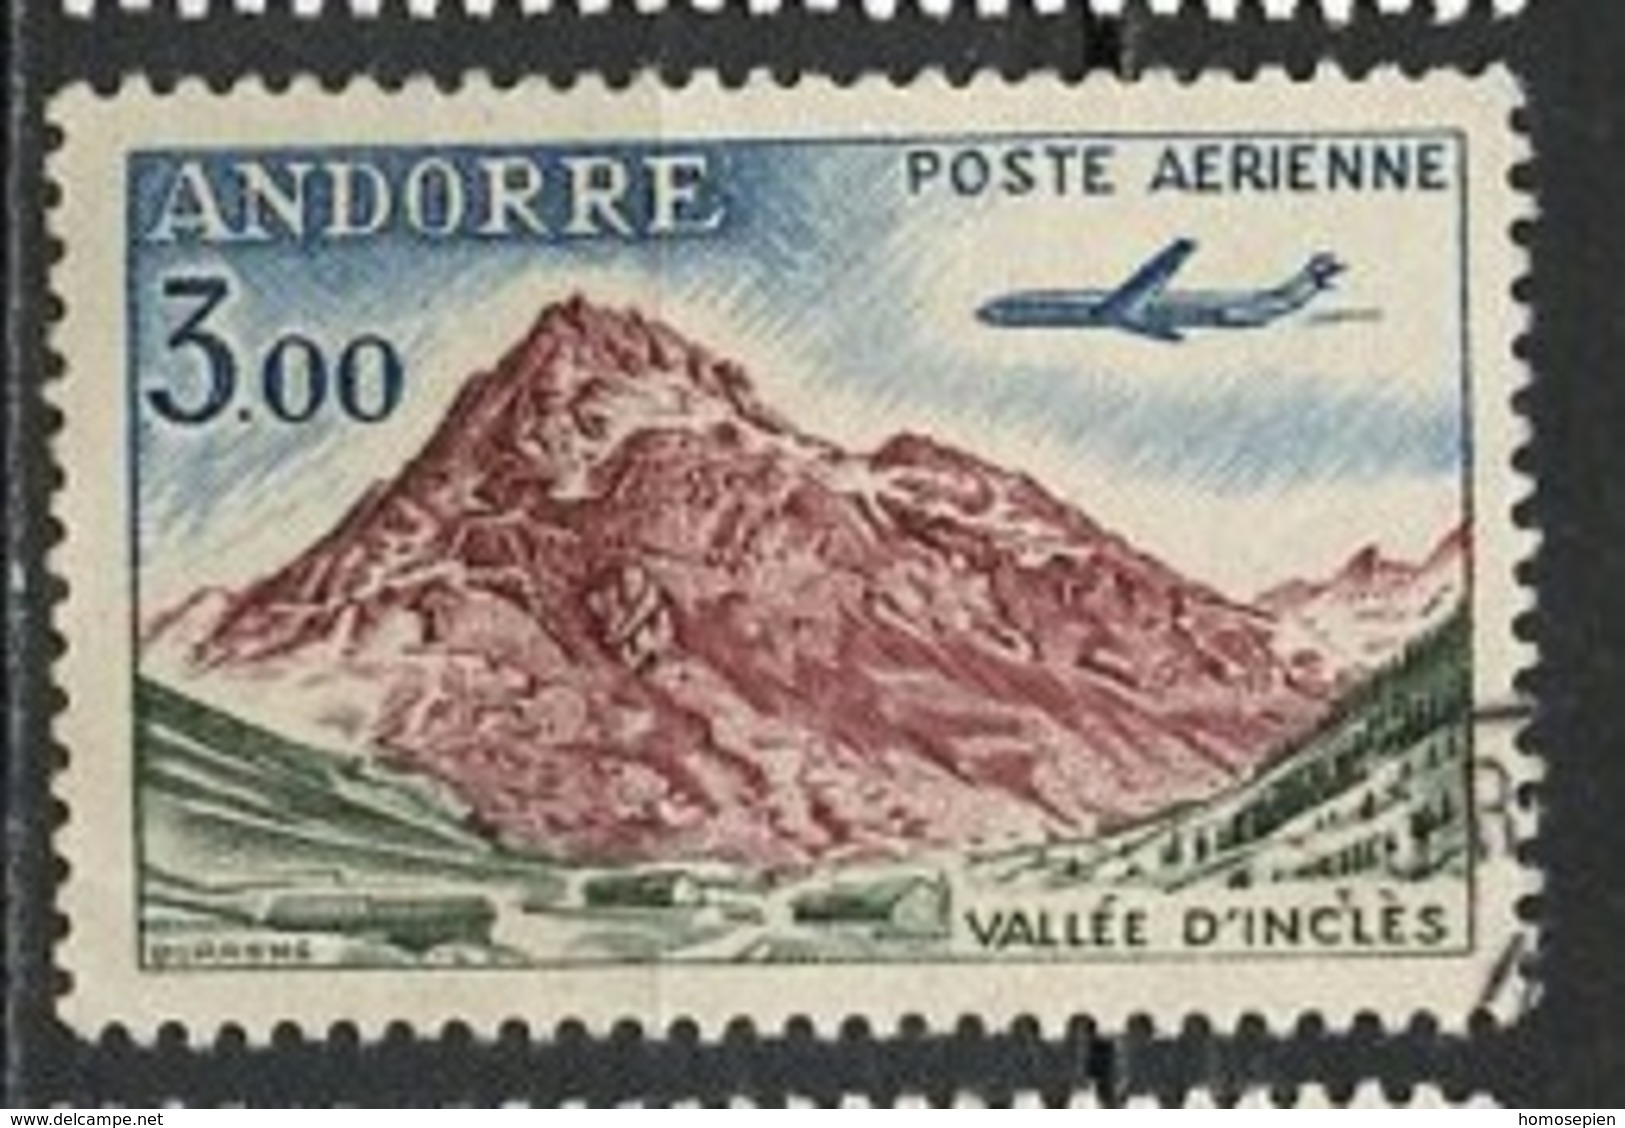 Andorre Français - Andorra Poste Aérienne 1961-64 Y&T N°PA6 - Michel N°F176 (o) - 3f Vallée D'Inclès - Luchtpost